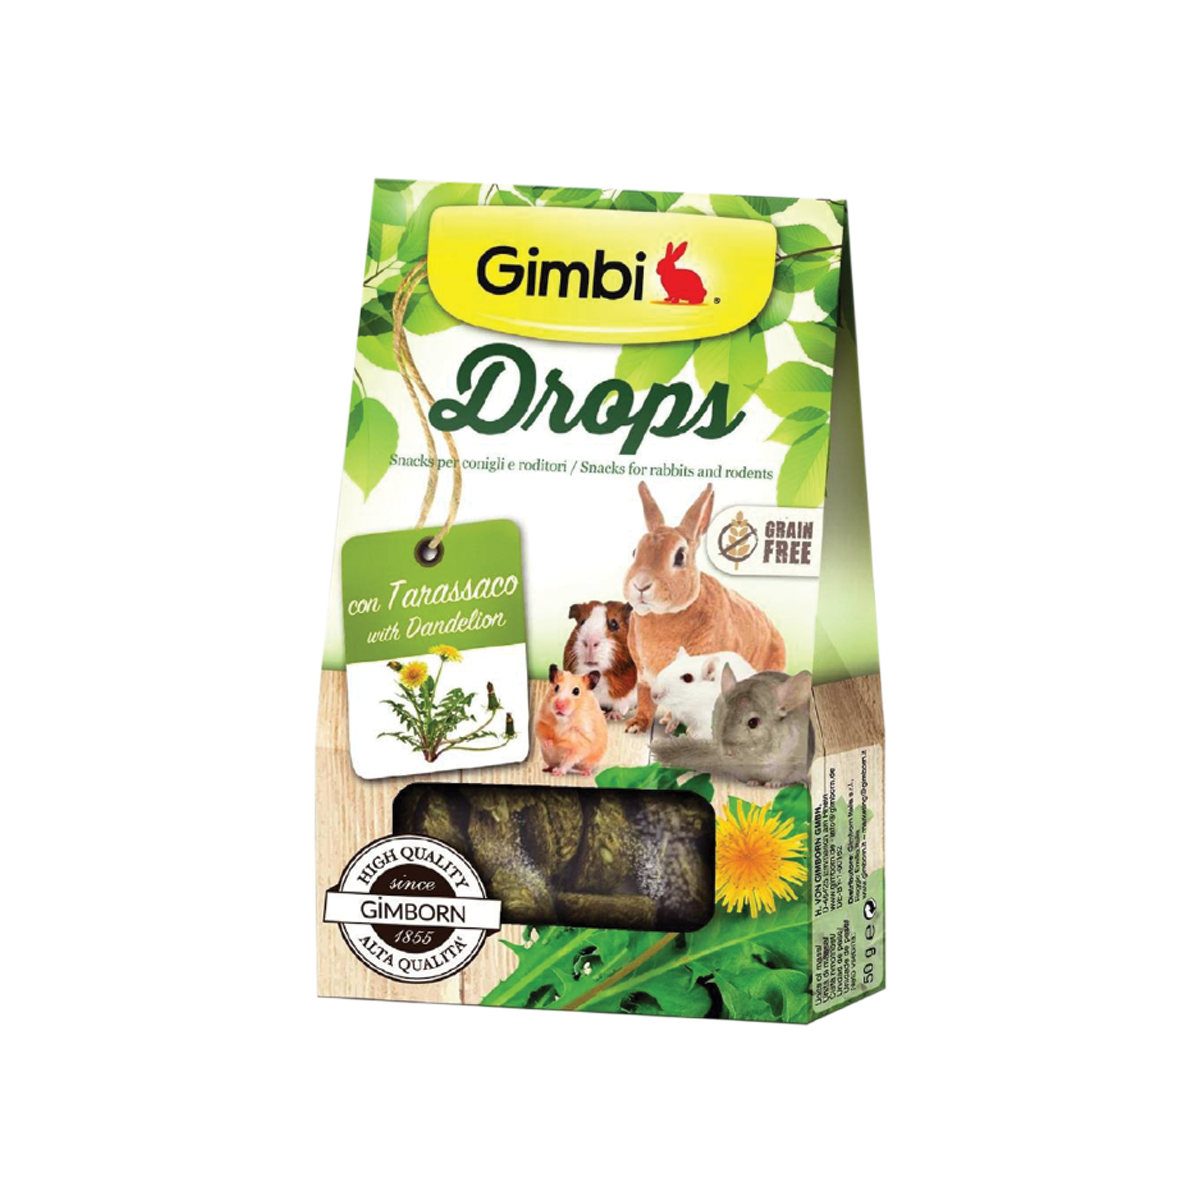 Gimbi Drops with Dandelion กิมบิ ขนมขบเคี้ยวผสมดอกแดนดิไลอัน สำหรับกระต่ายและหนูสายพันธุ์เล็ก ขนาด 50 กรัม